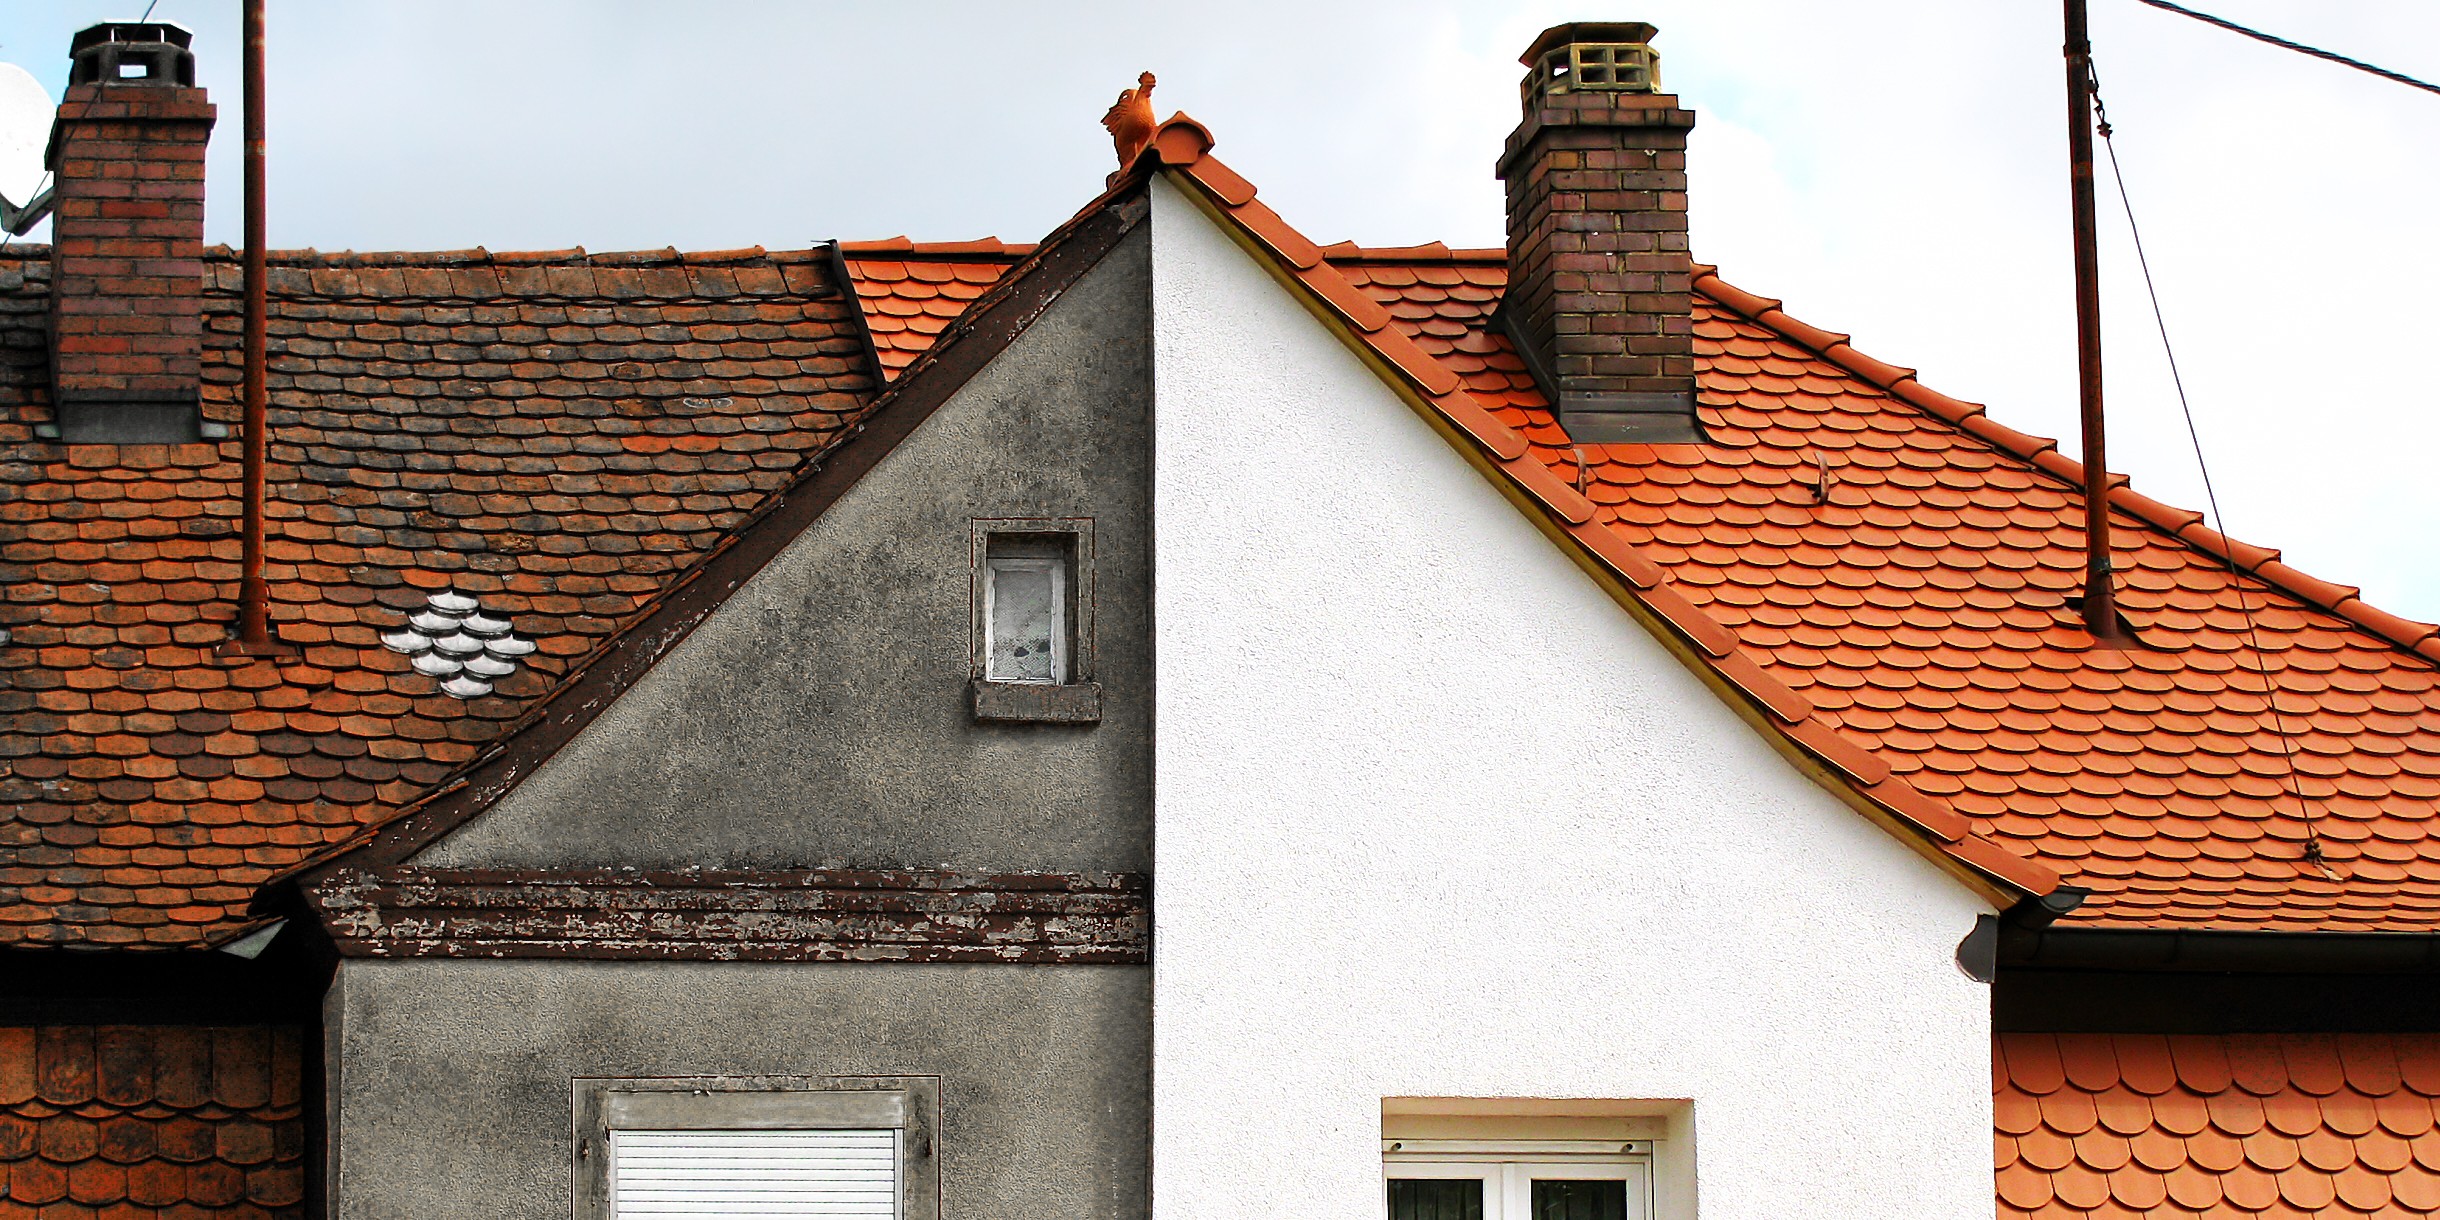 Dakreiniging: Werkwijze, valkuilen + prijs dak reinigen